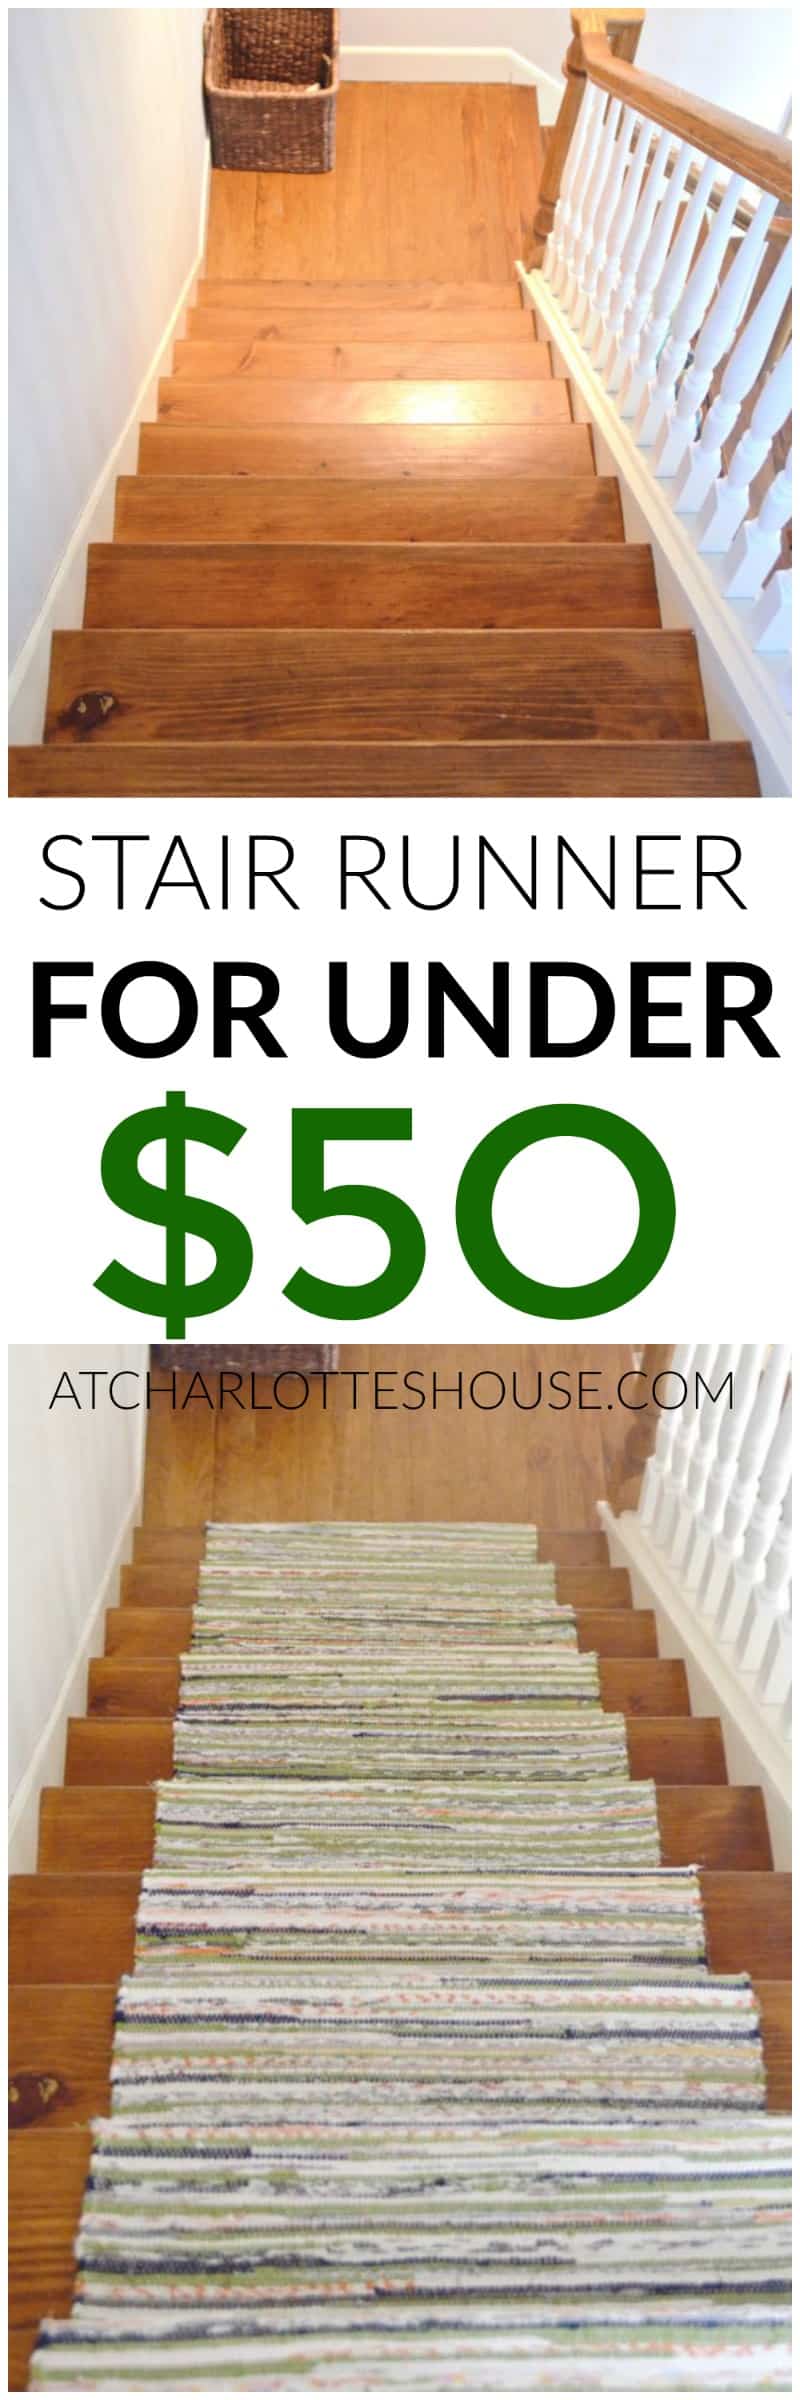 We installed this custom stair runner for under $50.